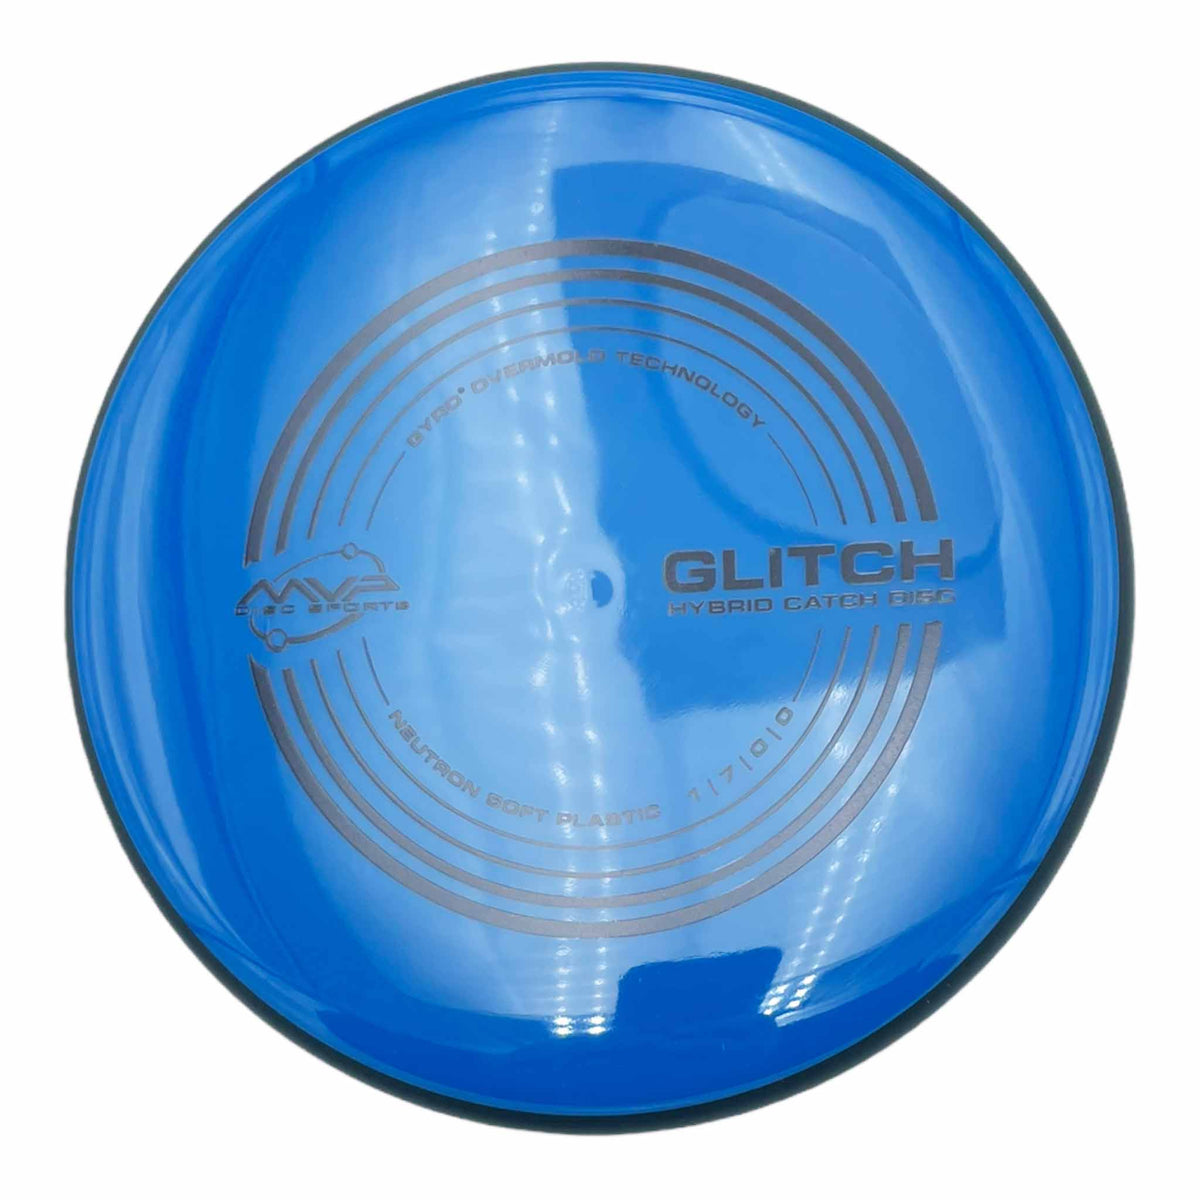 MVP Disc Sports Neutron Soft Glitch putter and approach - Blue